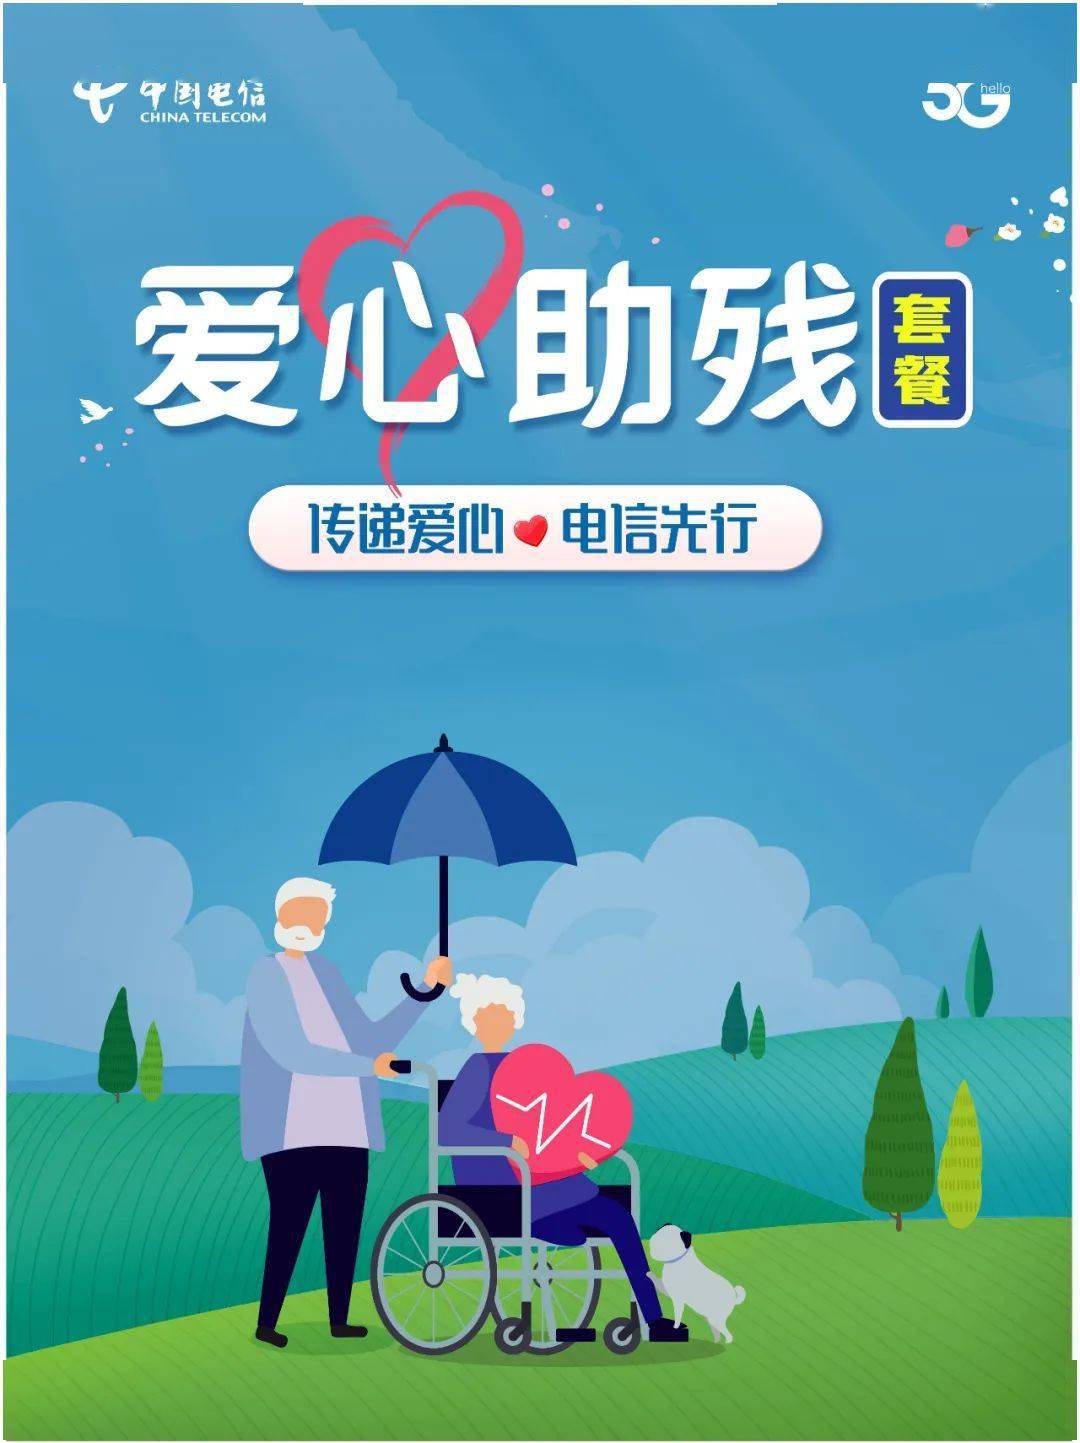 爱心助残通信套餐凡持有残疾人证的重庆市残疾人,均可到重庆电信